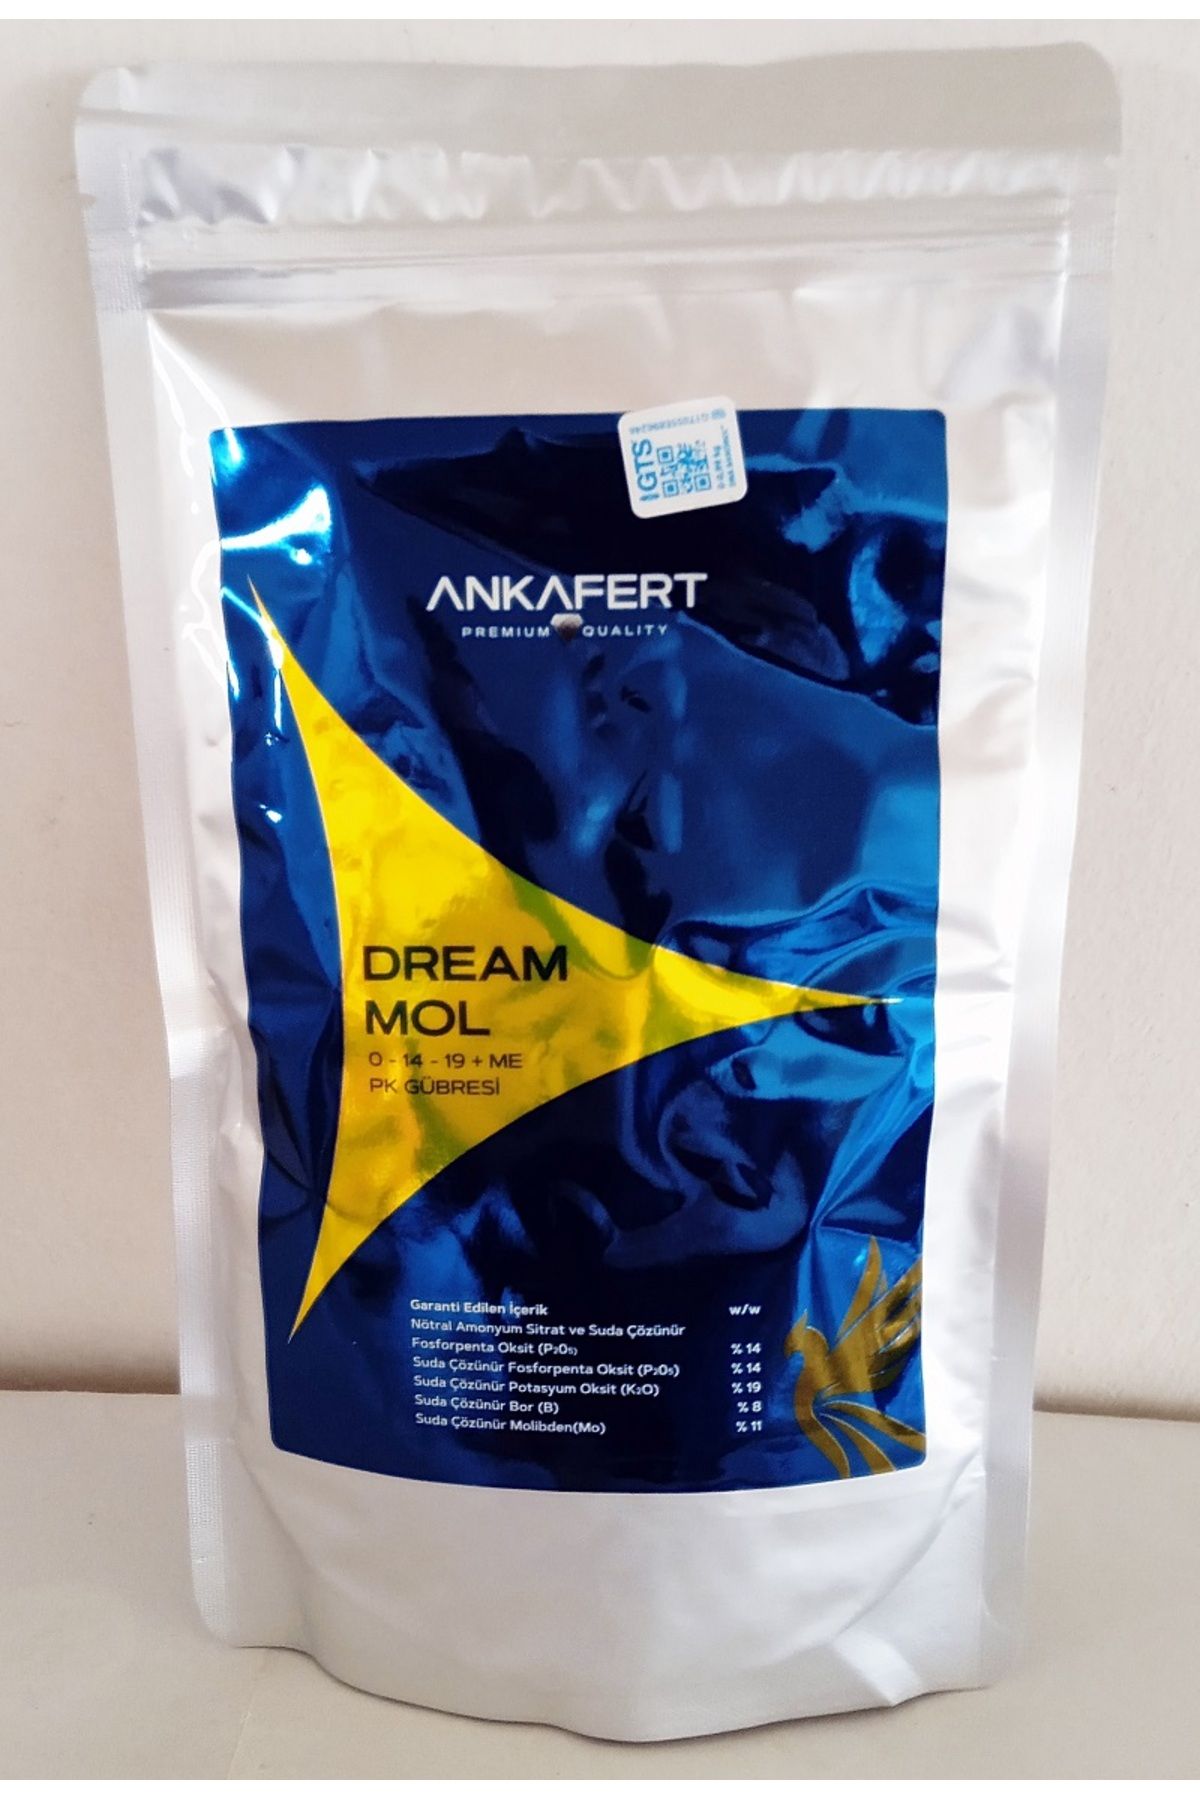 ANKAFERT Dream Mol (250 GR)-0.14.19 Me-tutturucu-molibden Ve Bor Içerikli Gübre